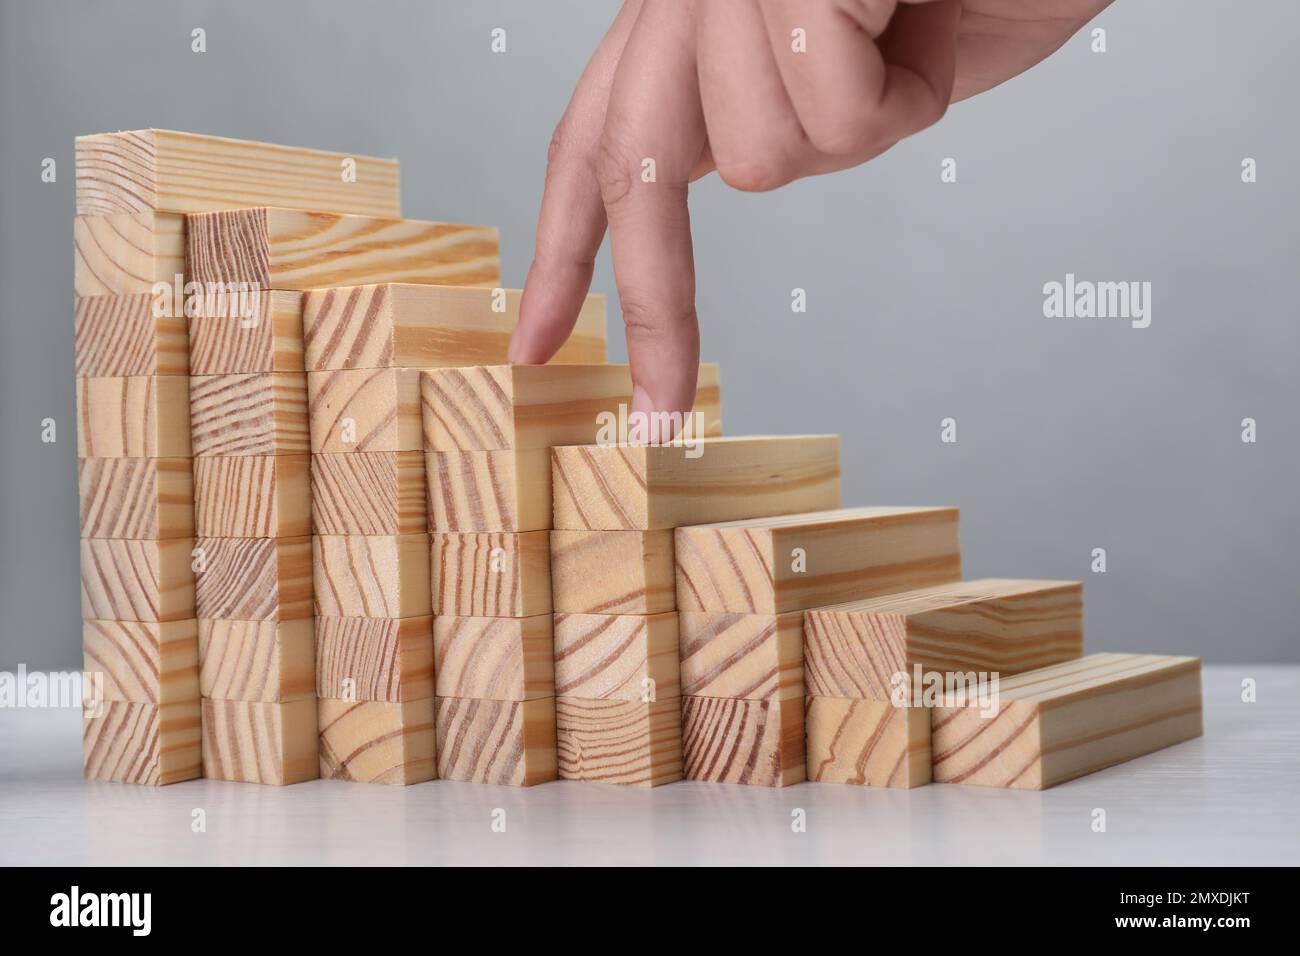 Femme imitant monter sur des escaliers en bois avec ses doigts, gros plan. Échelle de carrière Banque D'Images